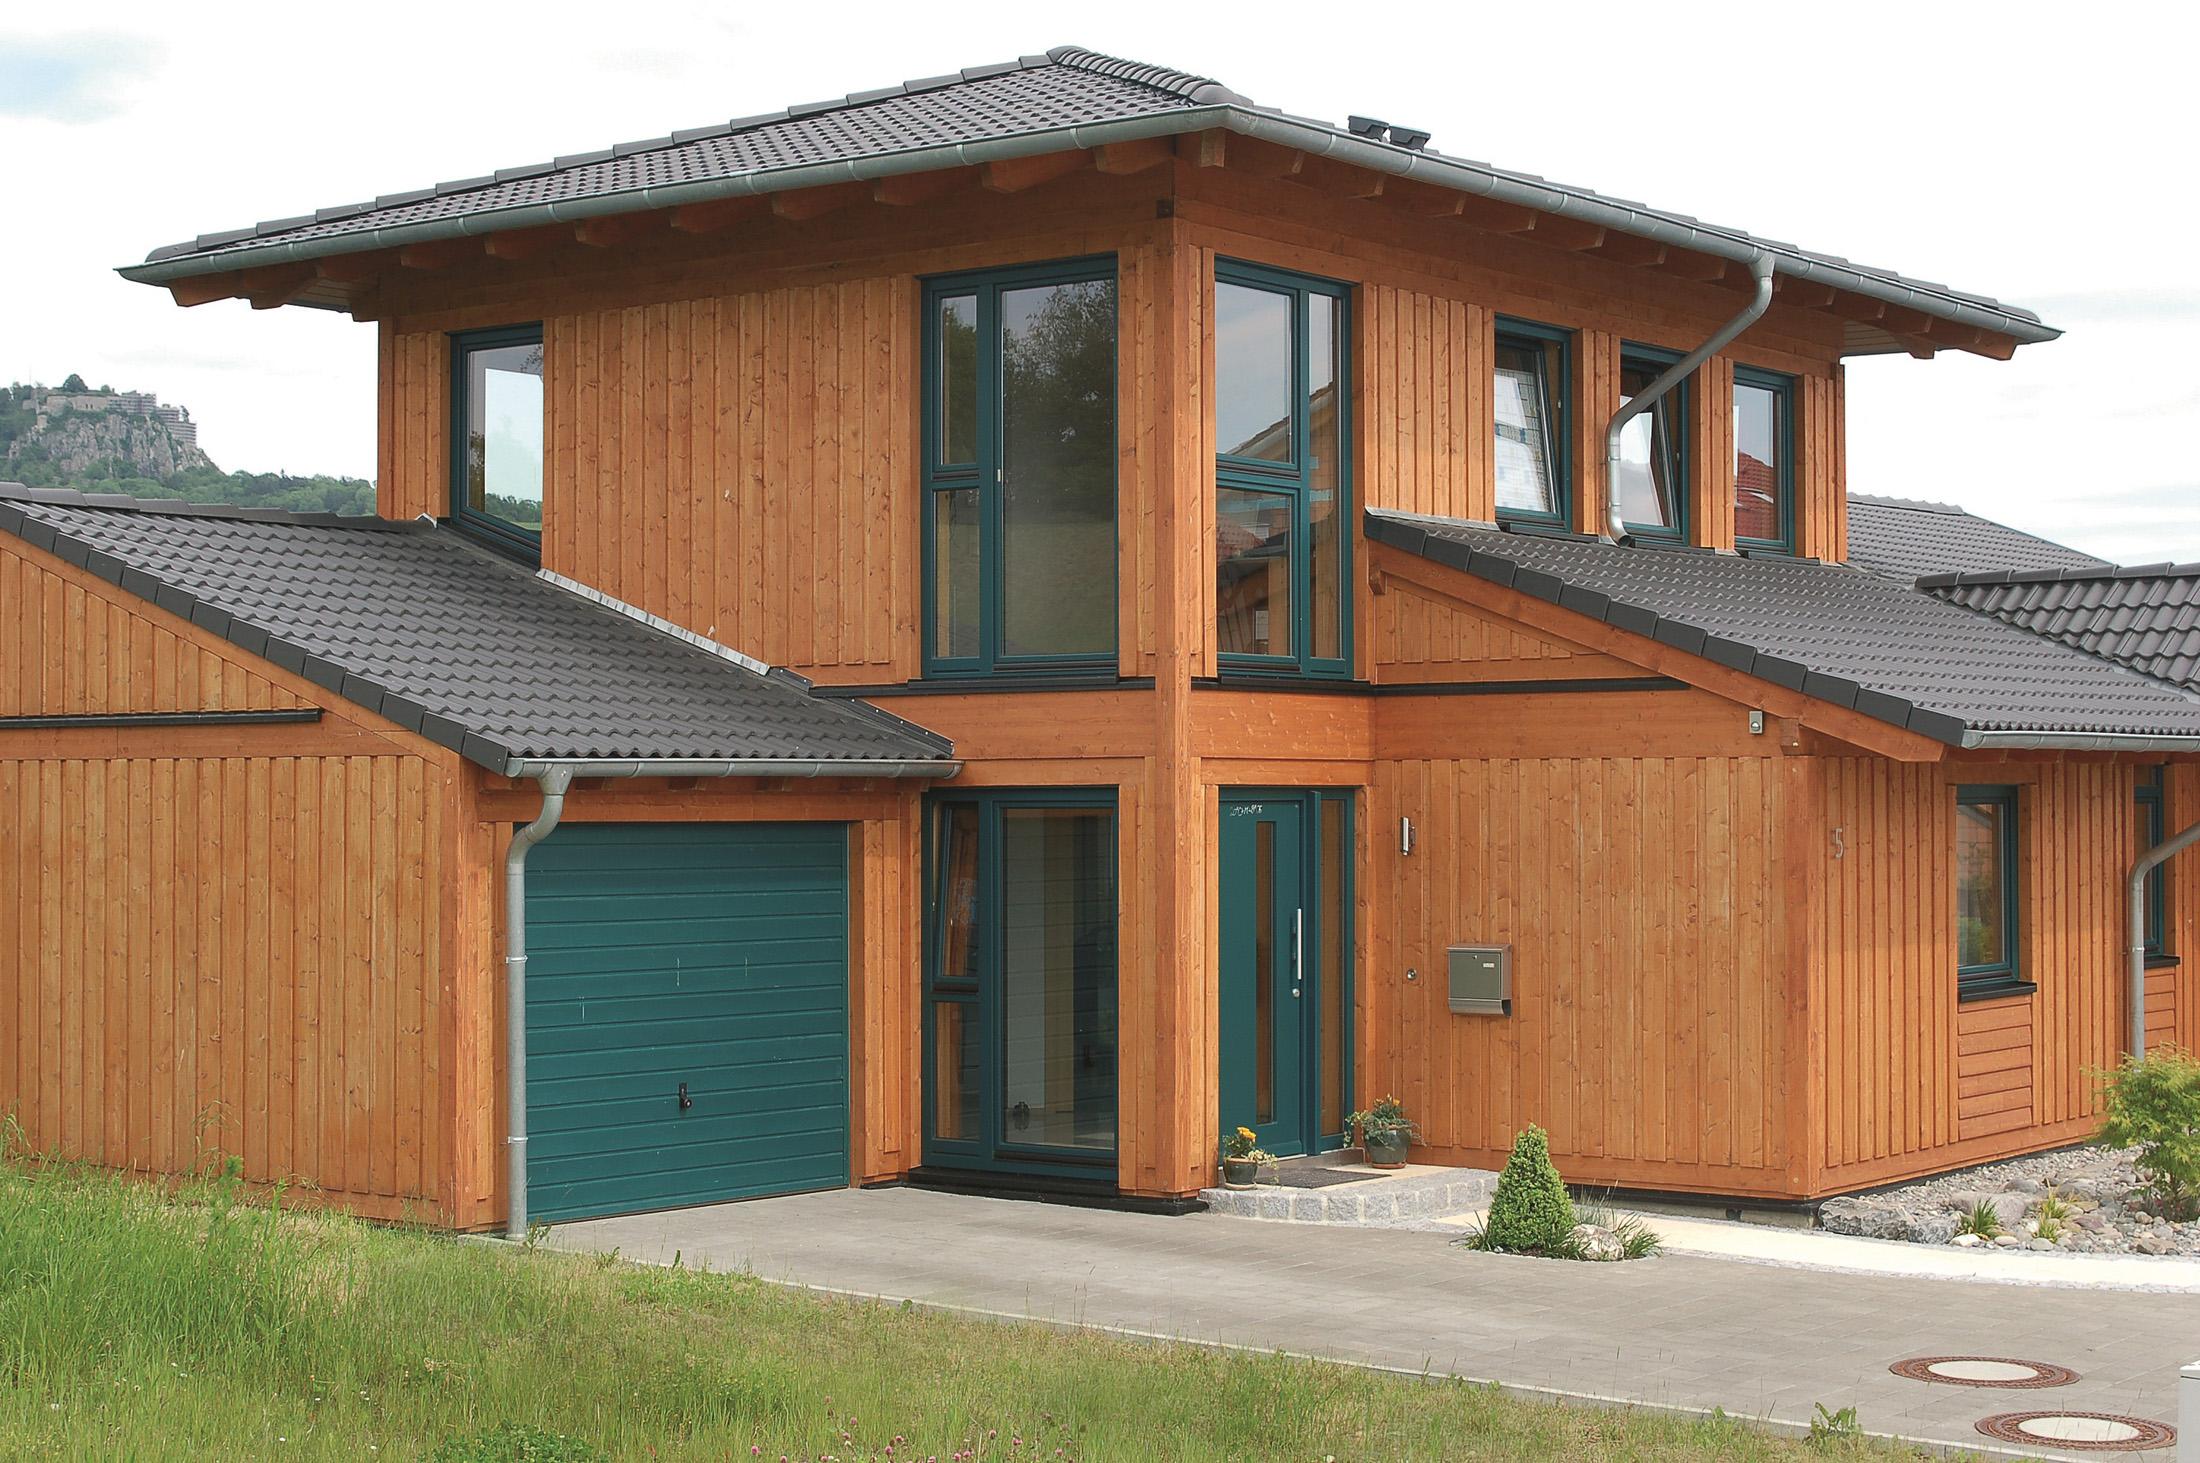 Holzhaus mit Garage #holzhaus ©Stommel Haus